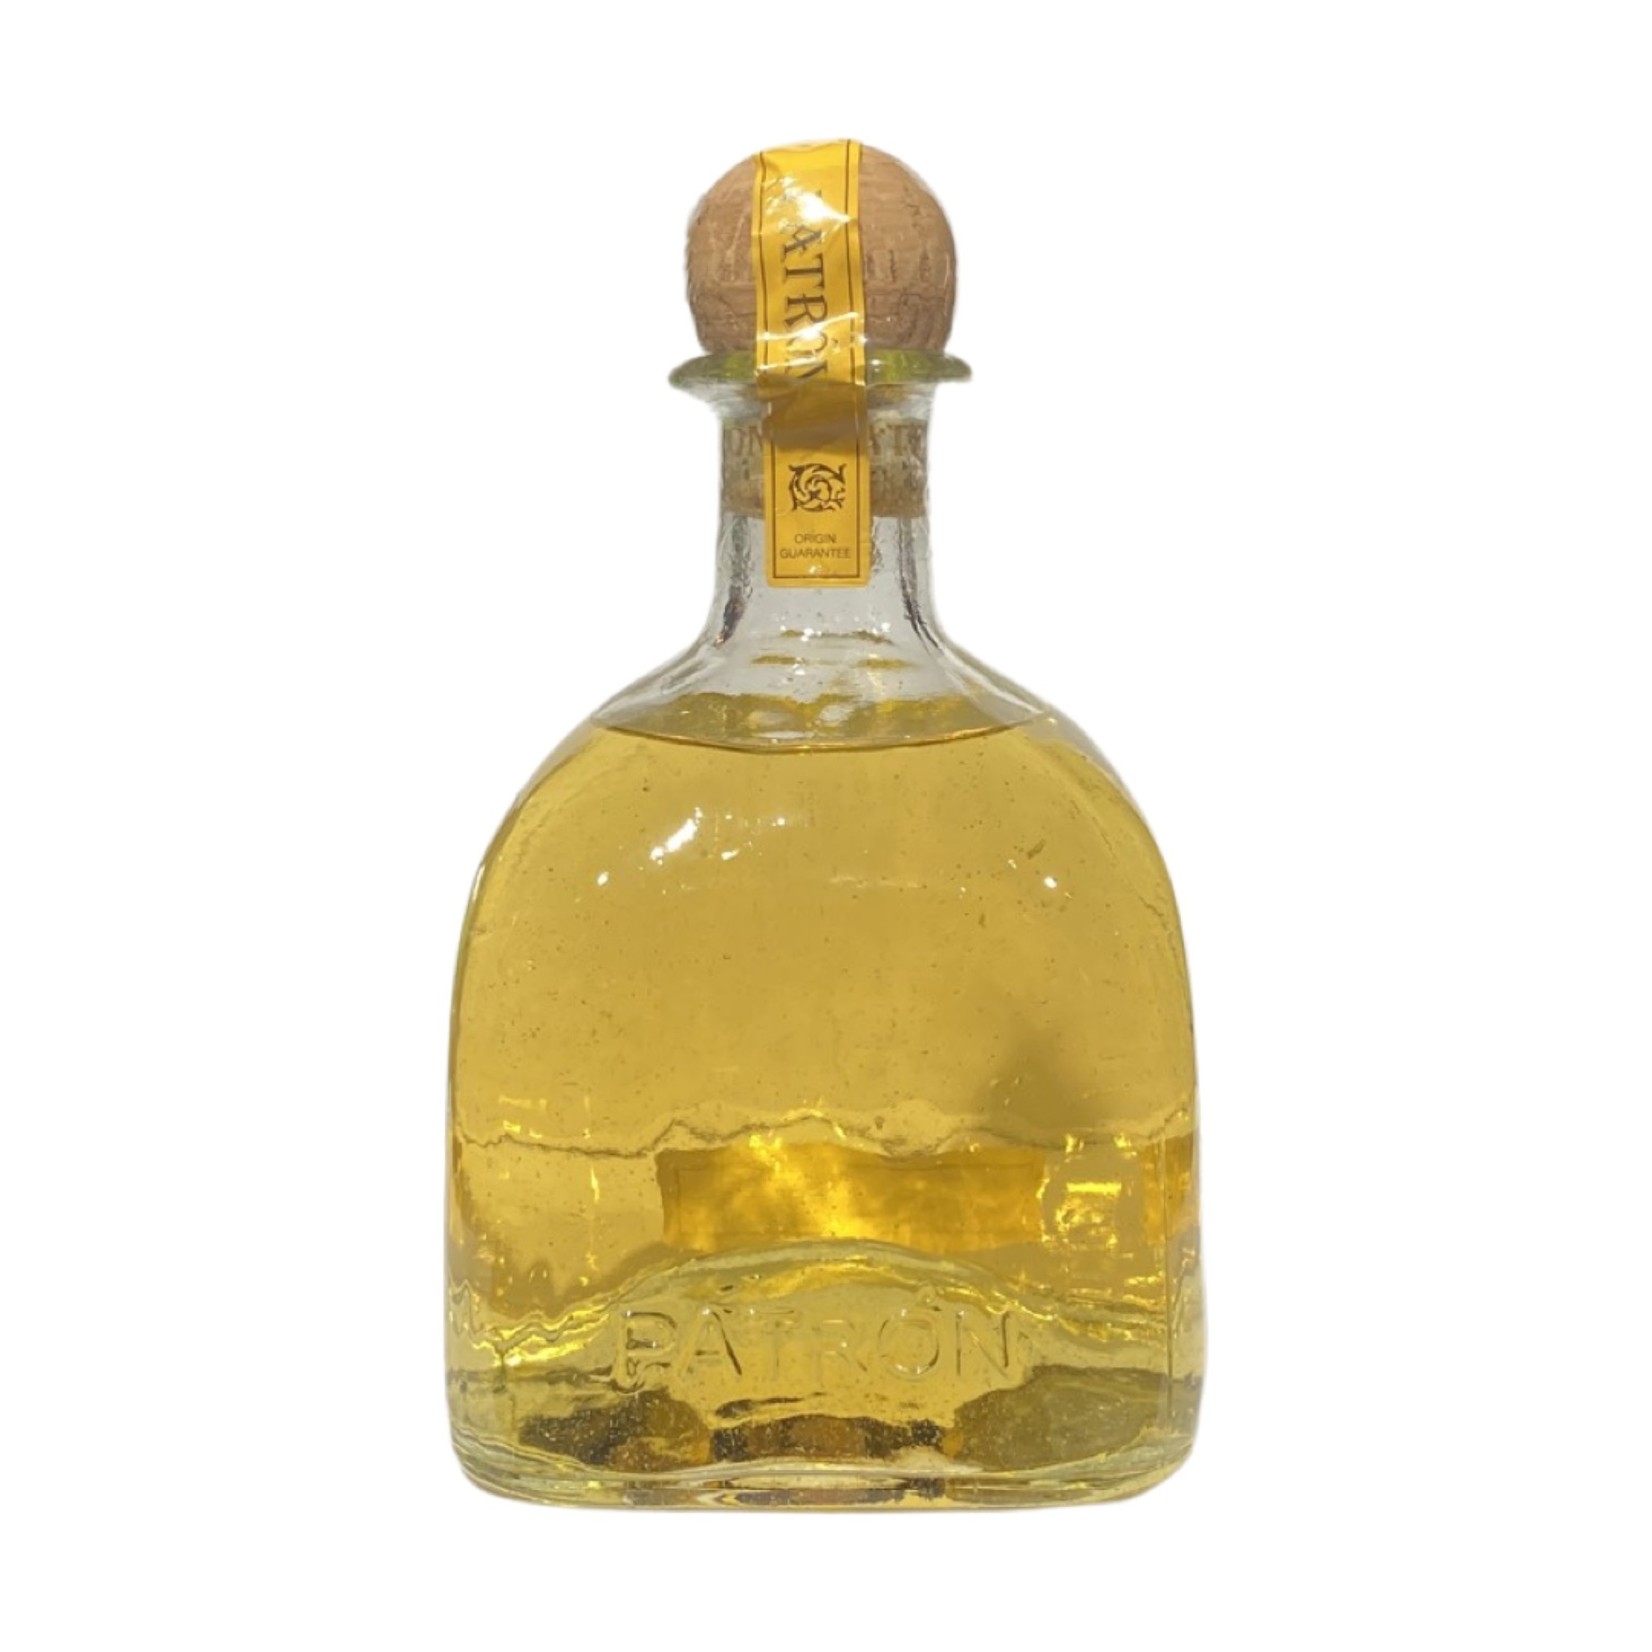 Patron Tequila Anejo + GB 0,7 ltr